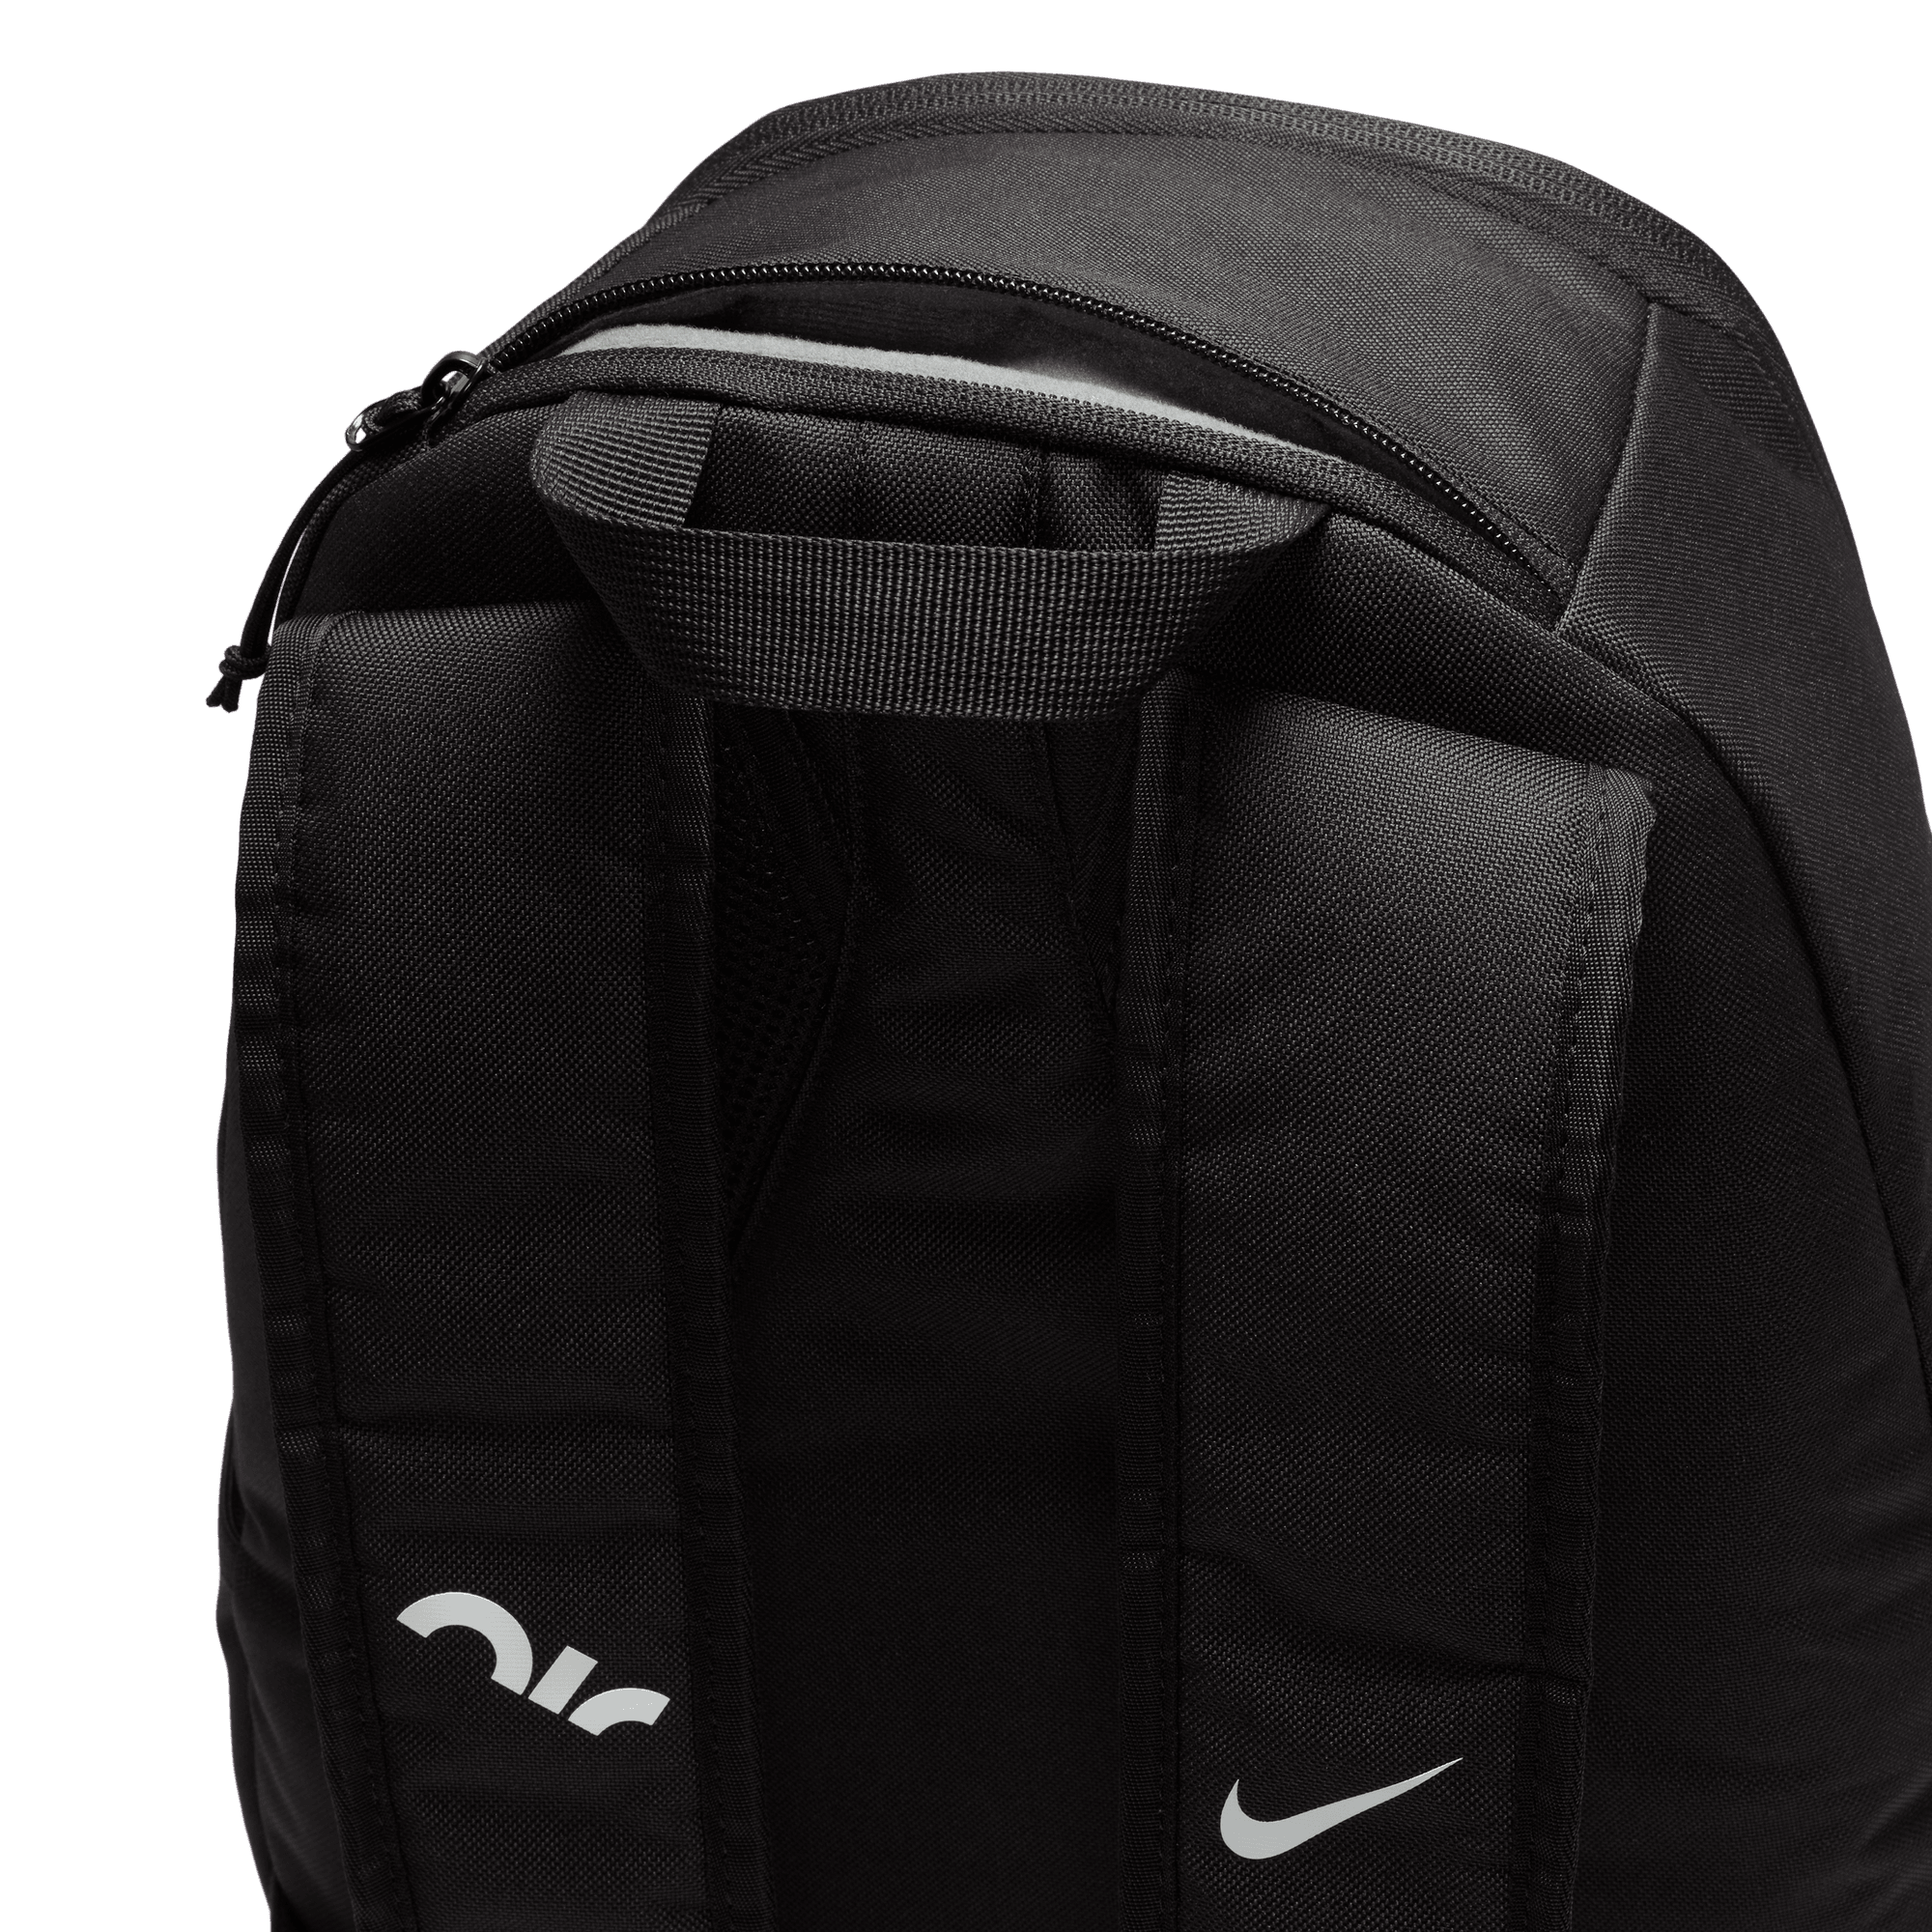 Nike Air Vintage 90s Backpack Rucksack School Bag Retro 1994 Grey/orange |  eBay